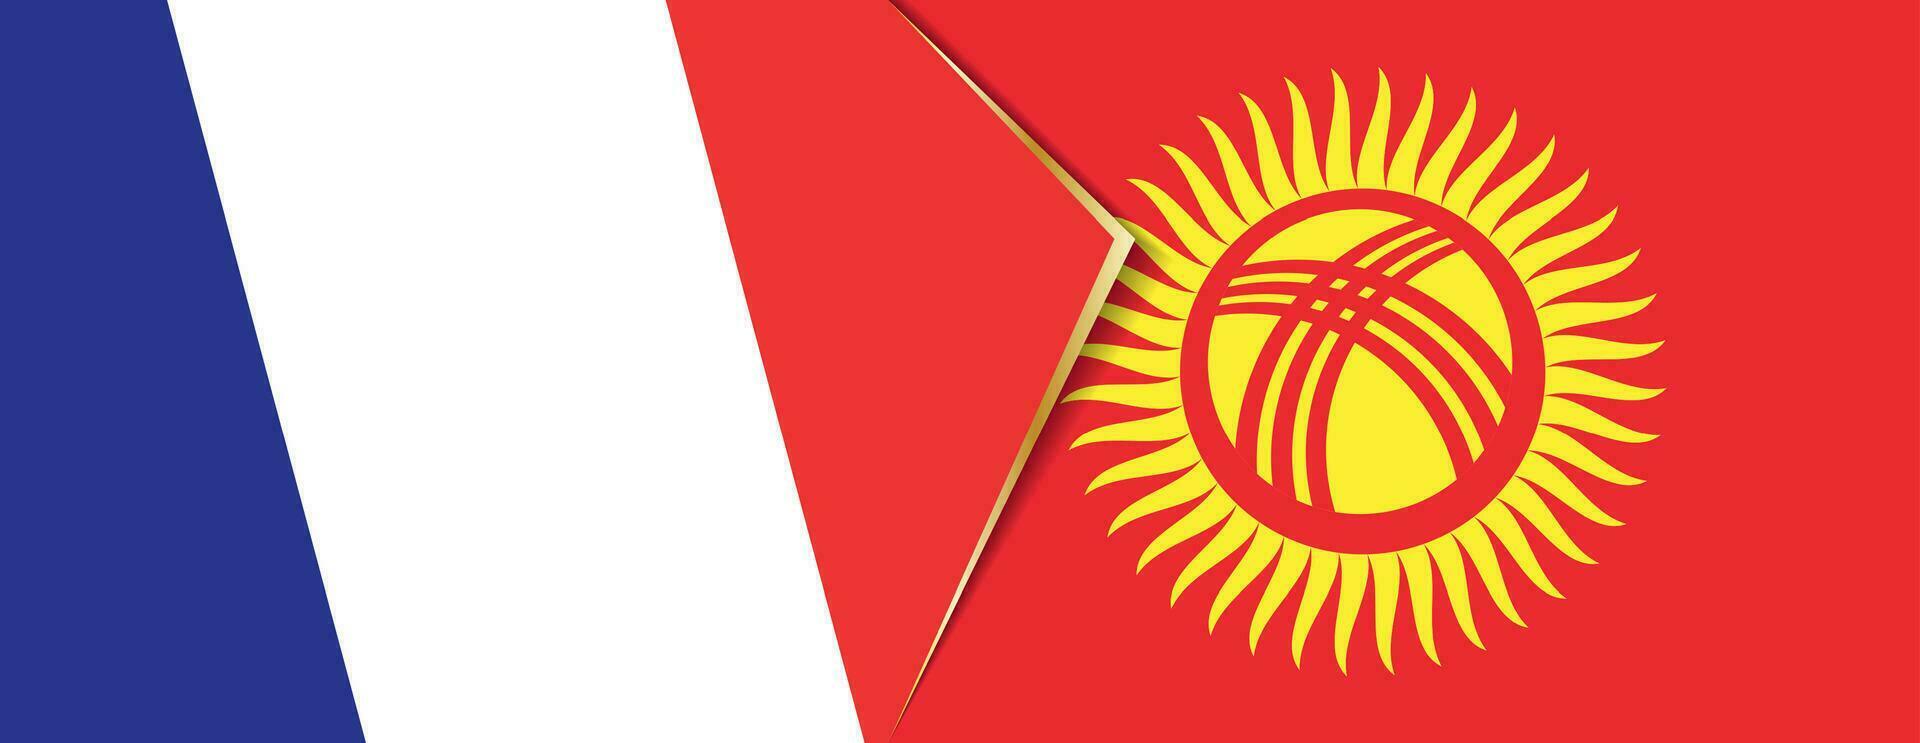 Francia y Kirguistán banderas, dos vector banderas